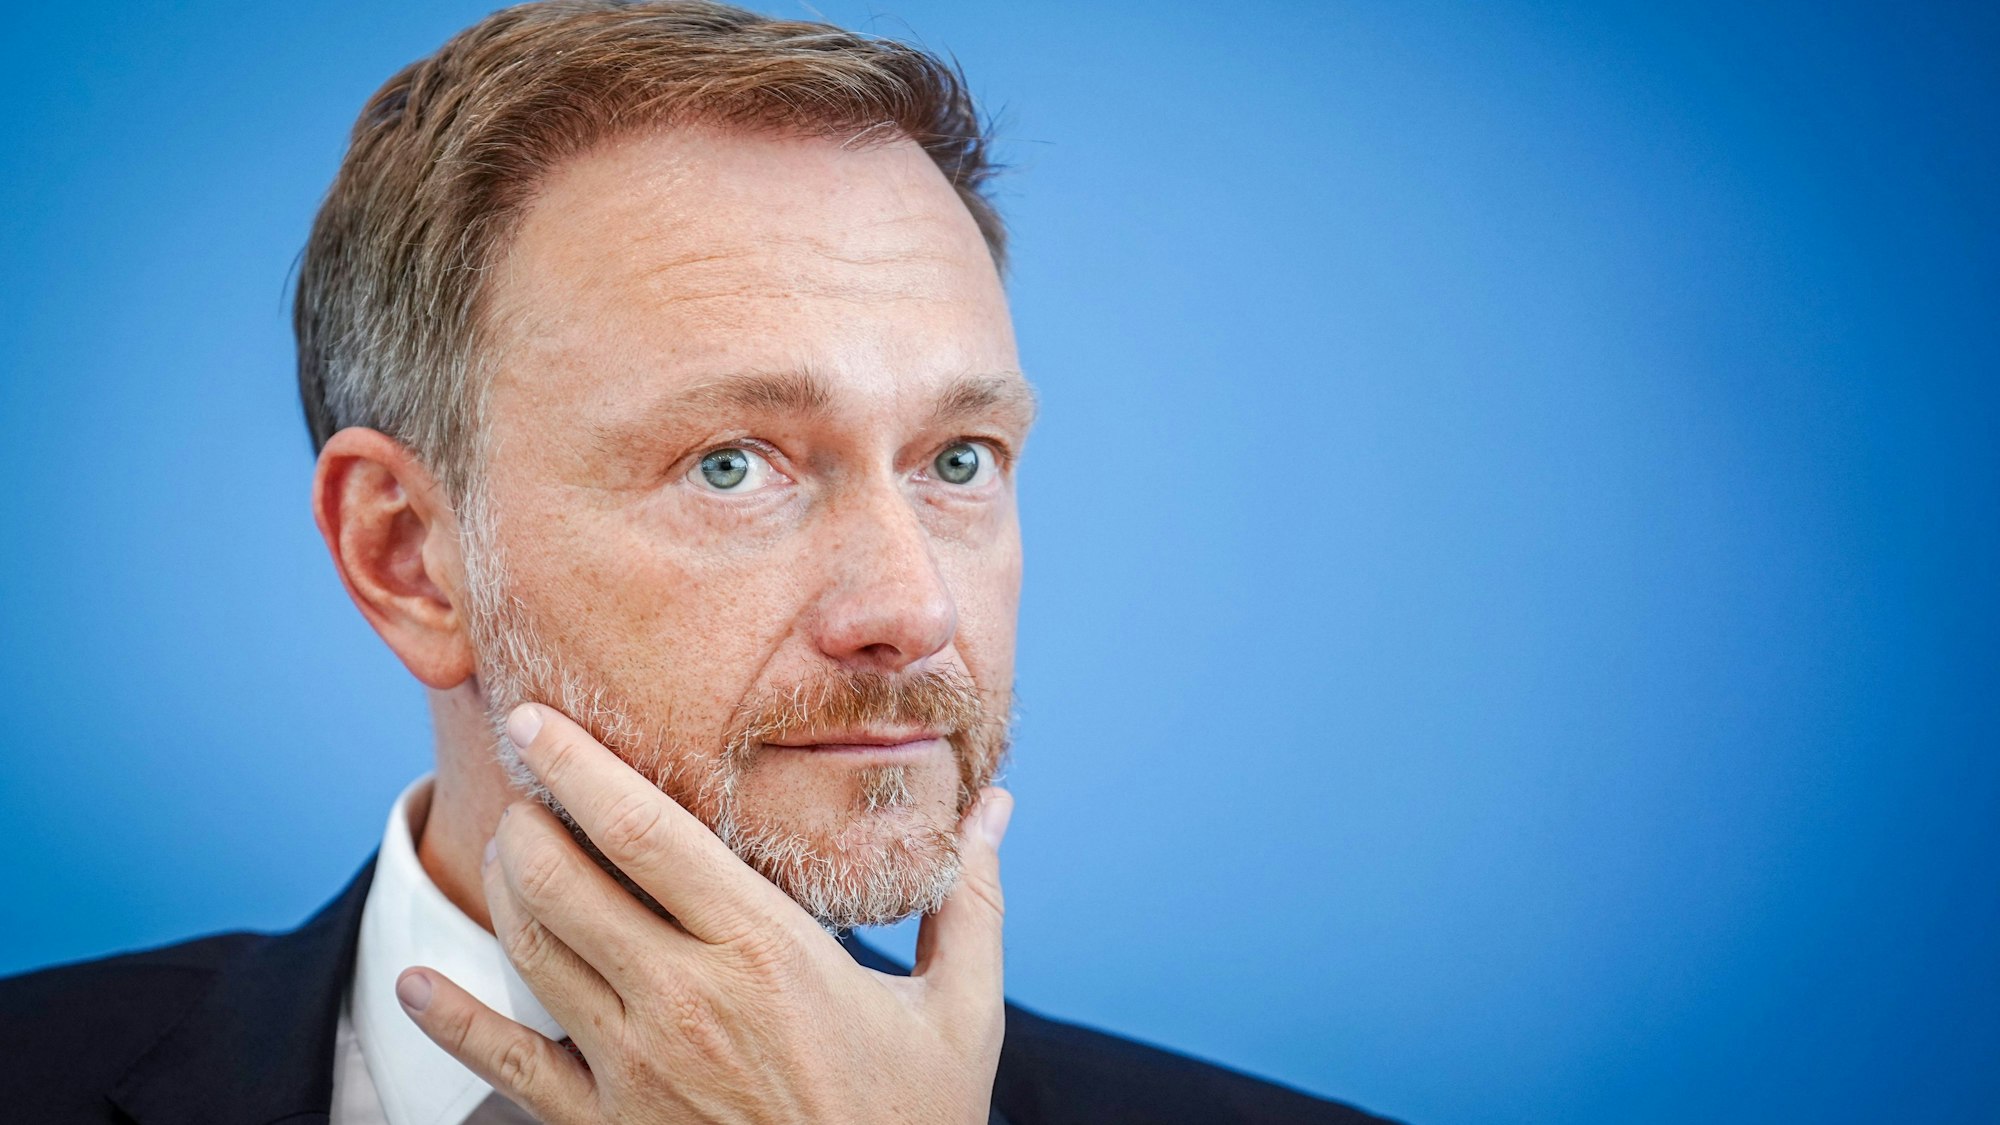 Bundesfinanzminister Christian Lindner in nachdenklicher Pose vor blauem Hintergrund.